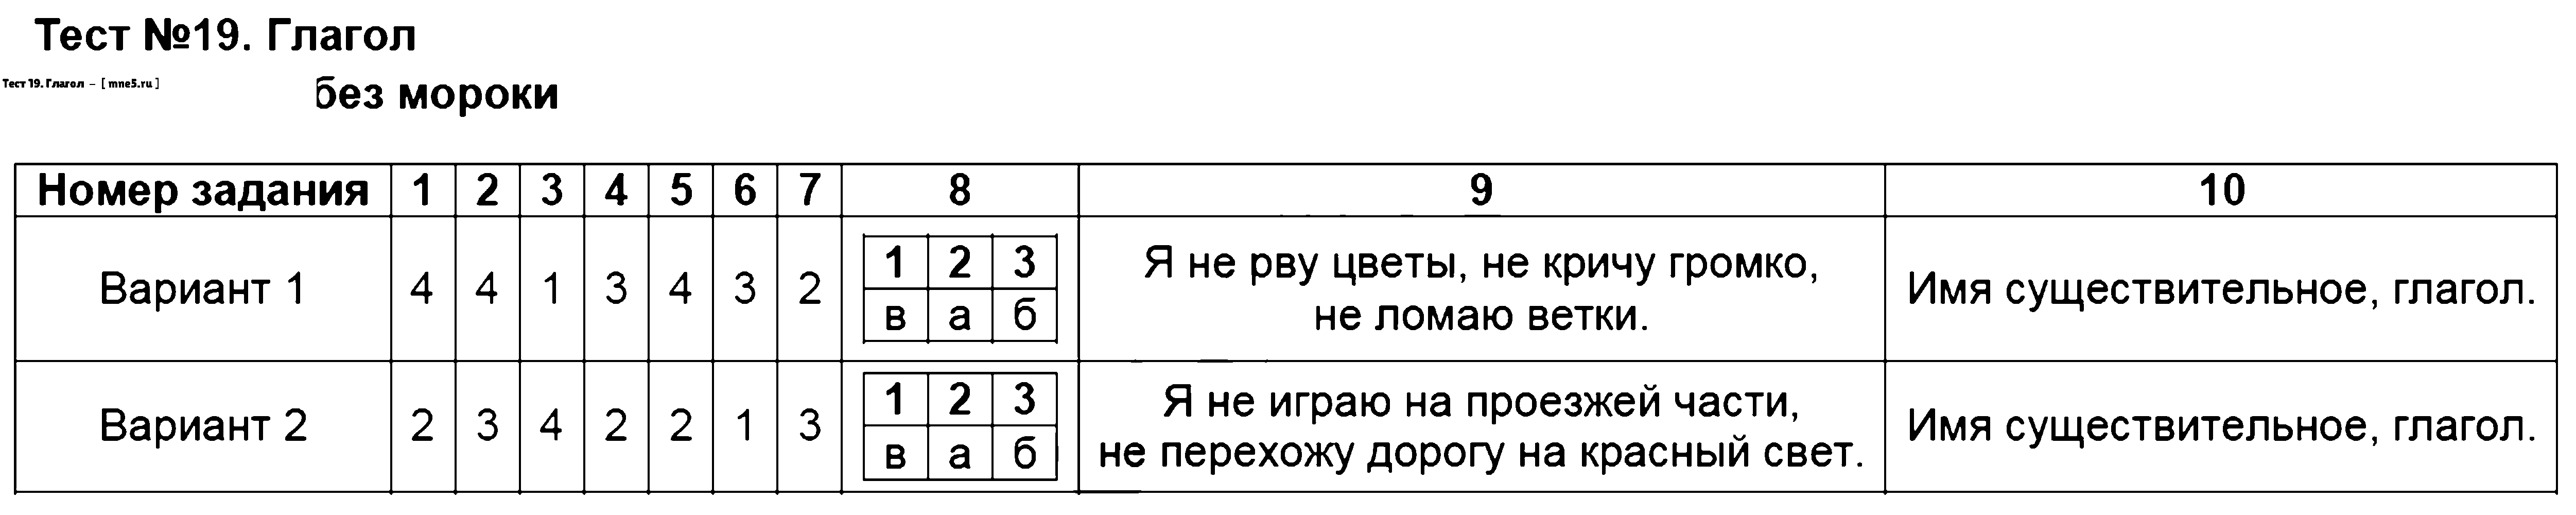 ГДЗ Русский язык 3 класс - Тест 19. Глагол